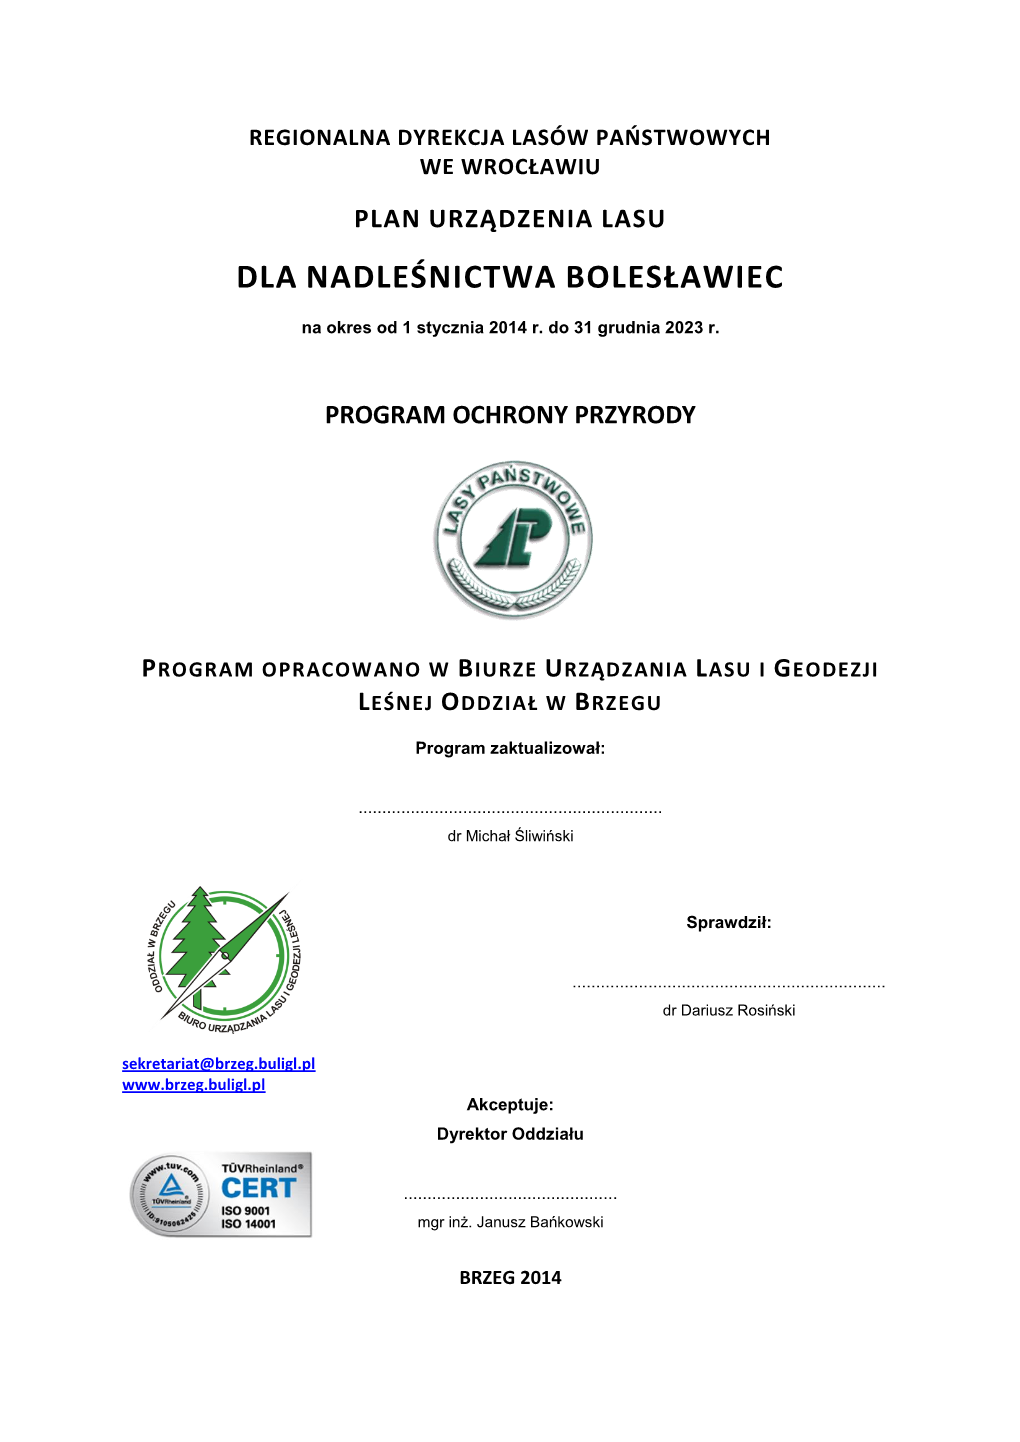 Regionalna Dyrekcja Lasów Państwowych We Wrocławiu